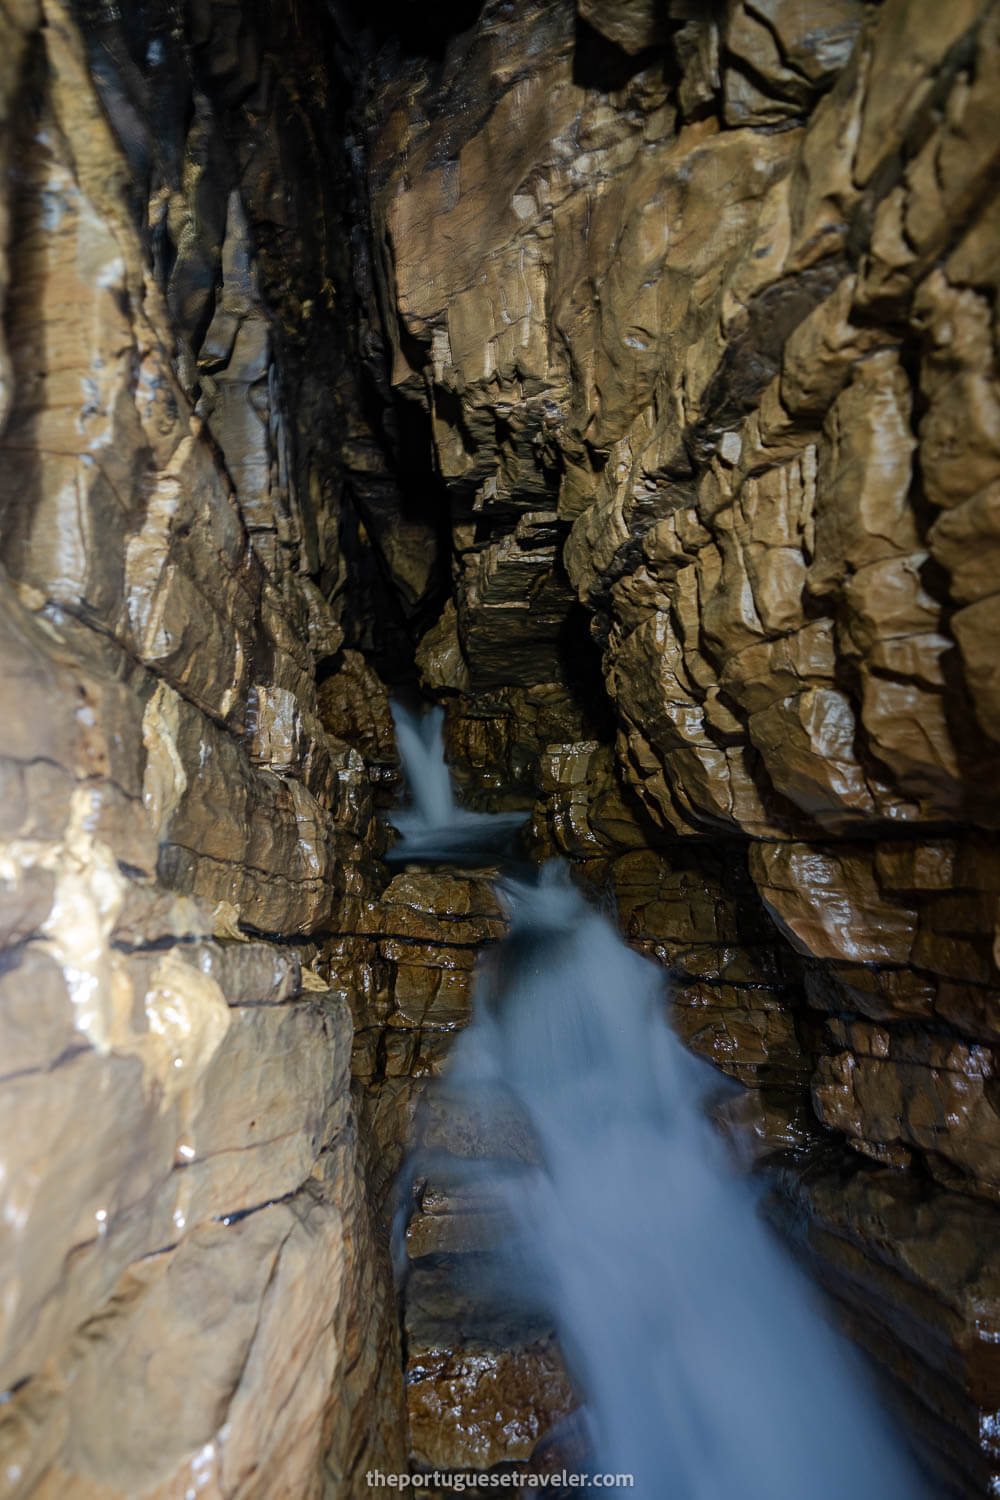 The River inside Cueva de Los Tayos